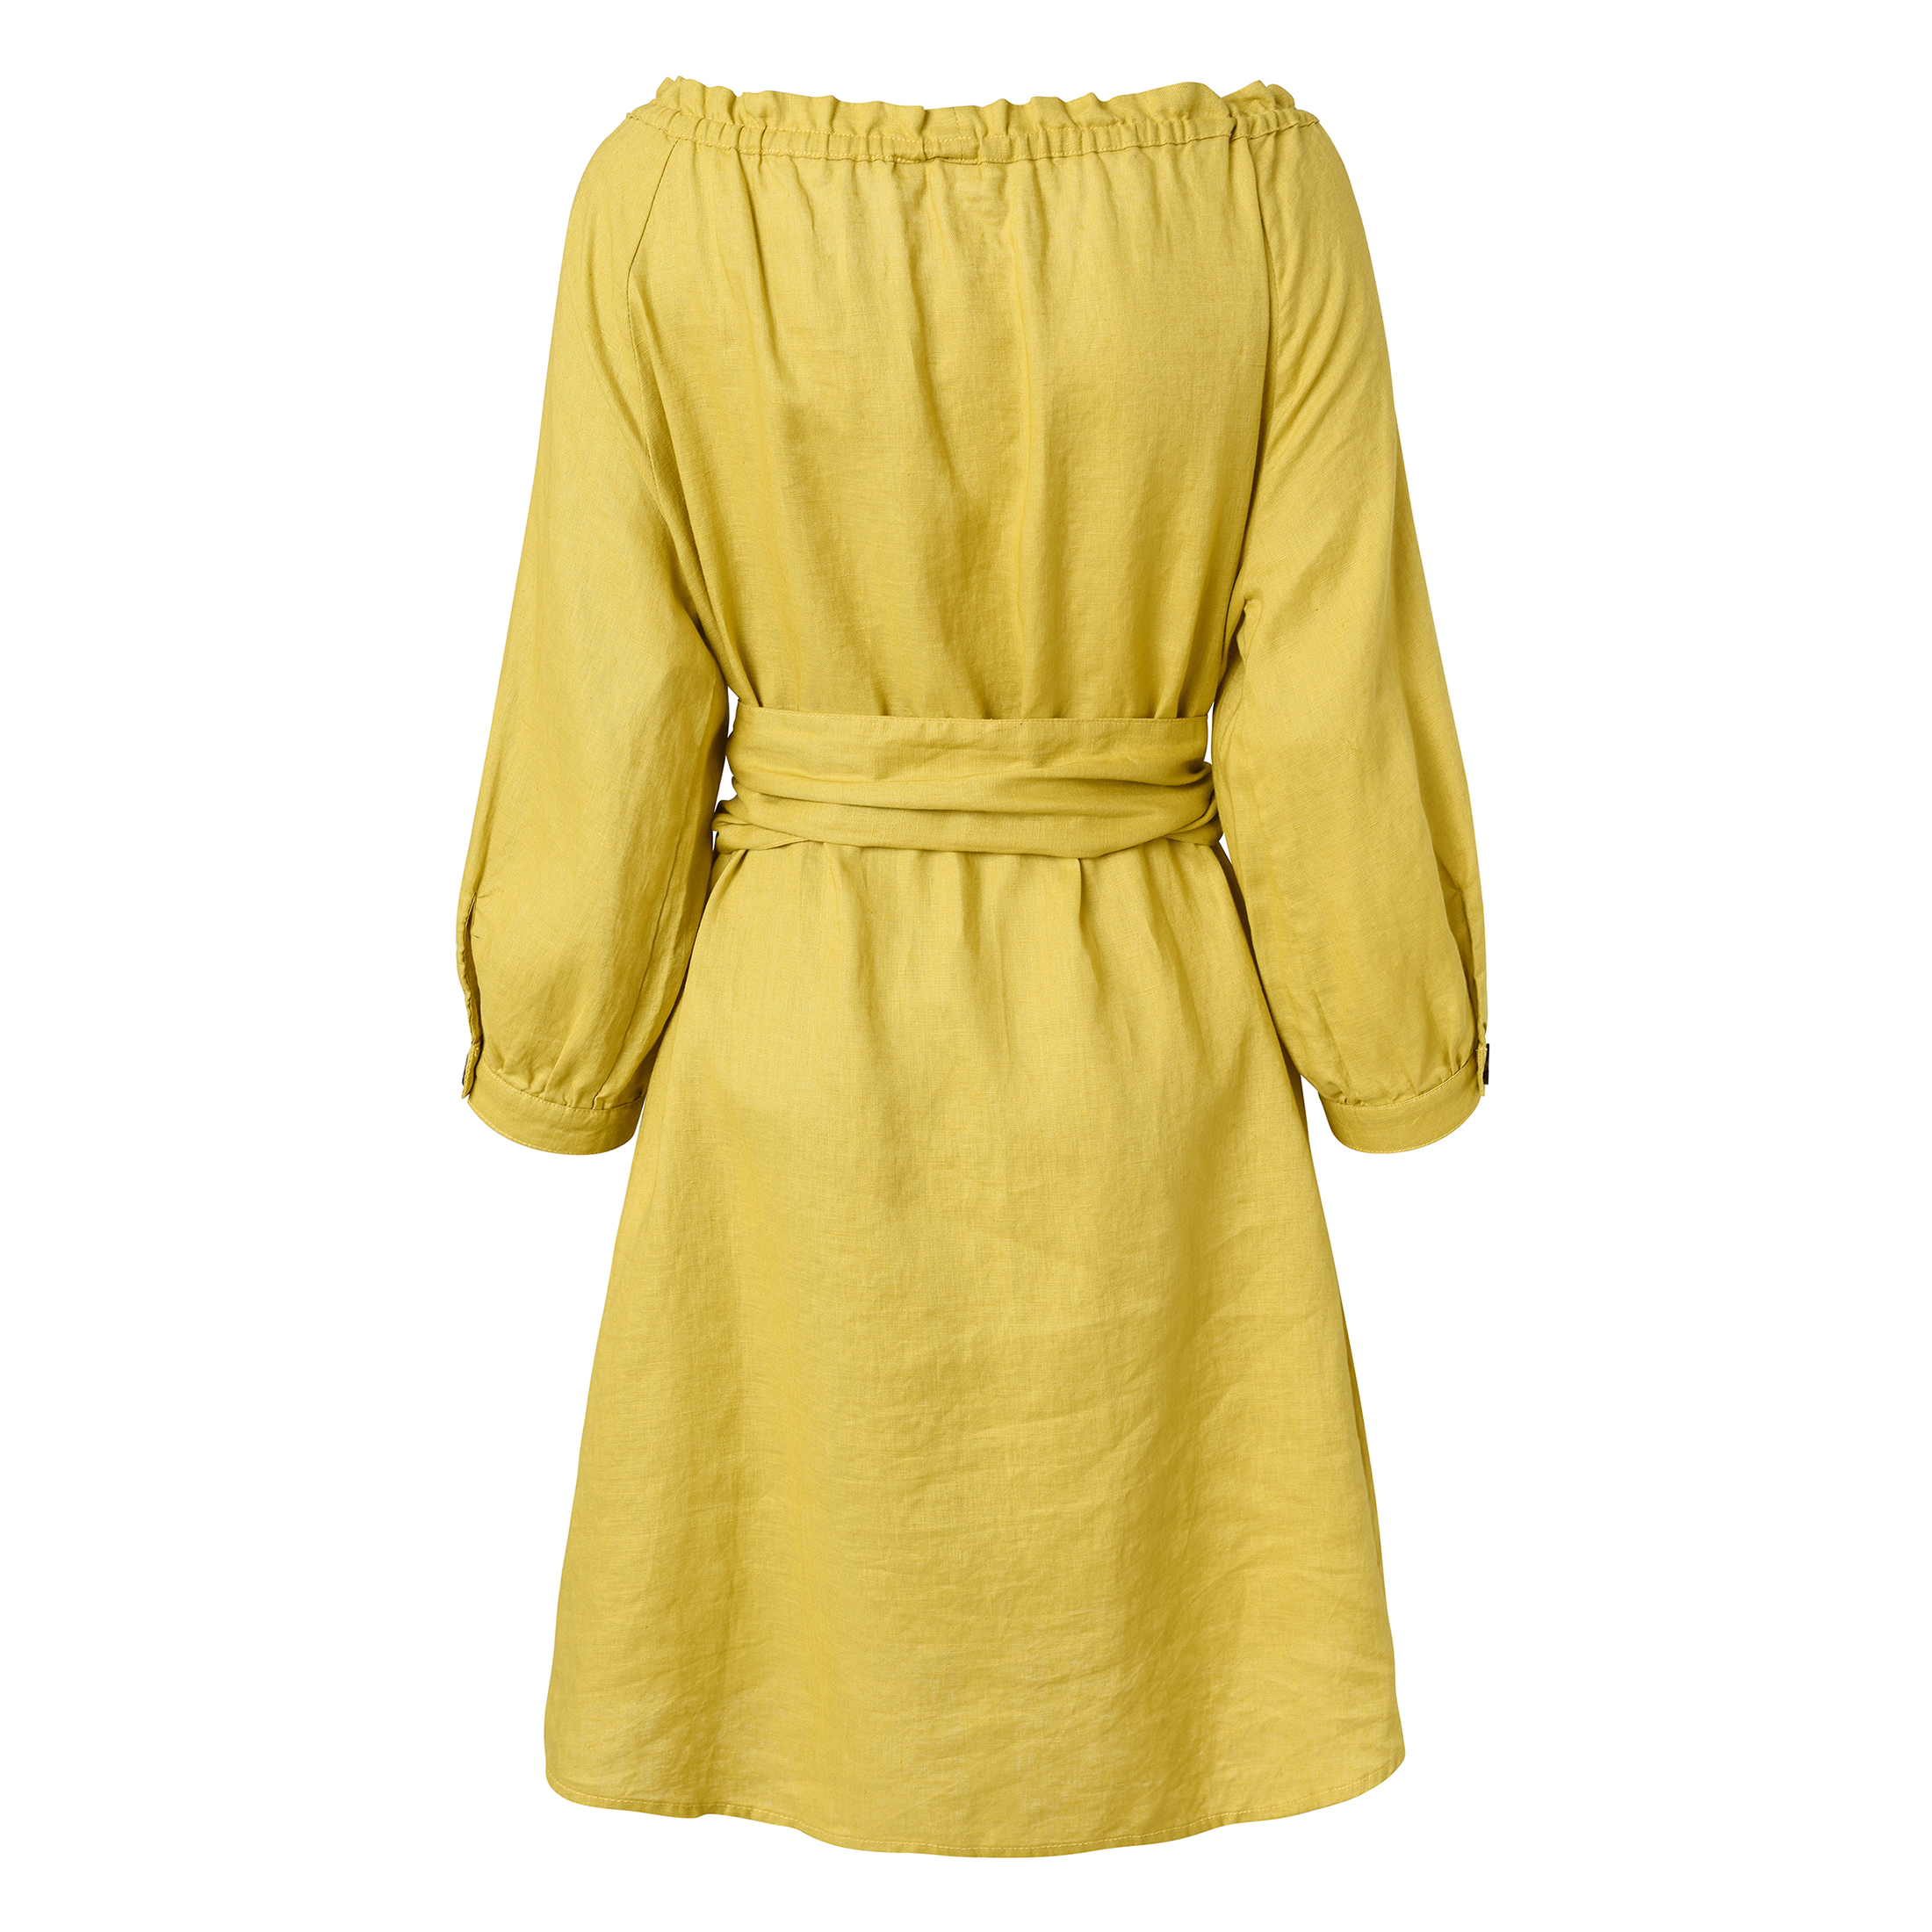 Fashion Women\'s Dress - New Design Long Summer Dress with Soft Linen Fabric